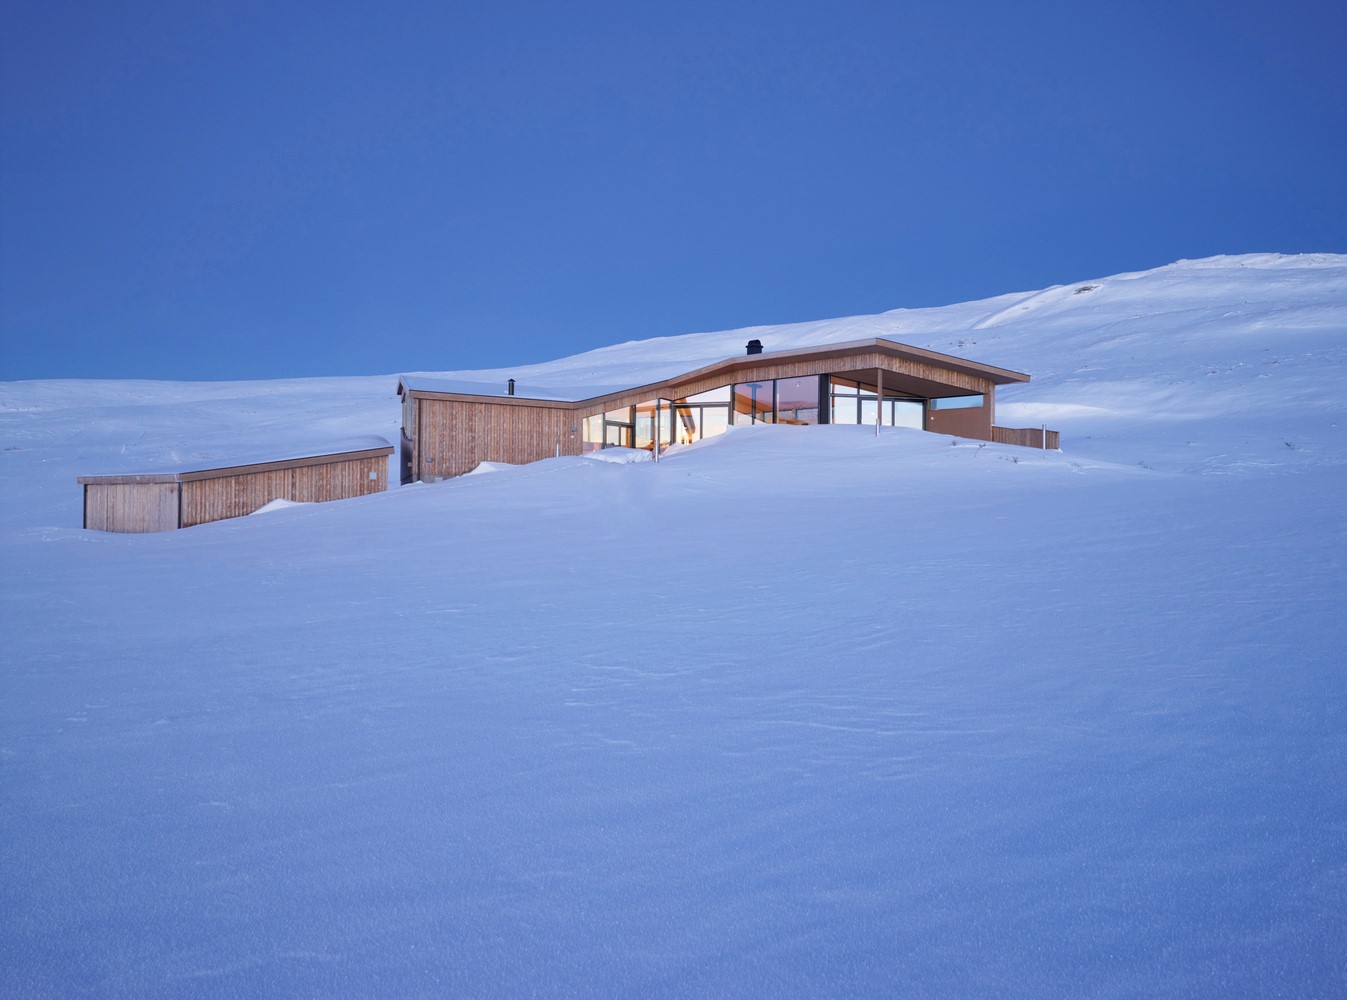 挪威雪景小木屋图片